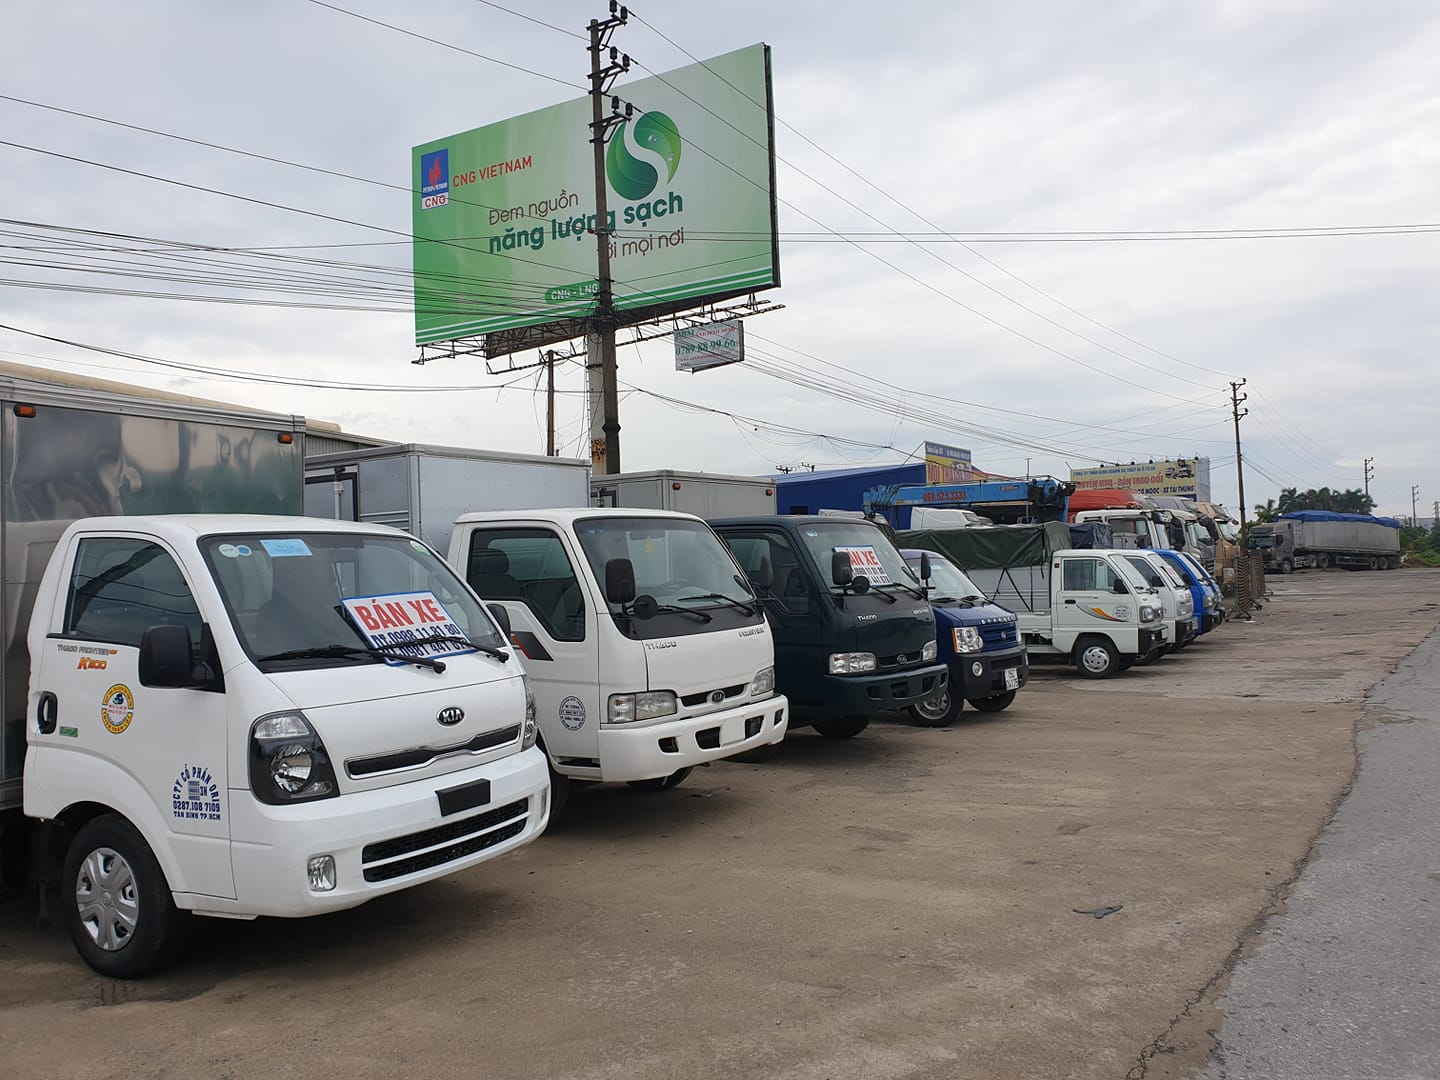 Mua bán xe ô tô tải cũ giá cao ở Bắc Ninh